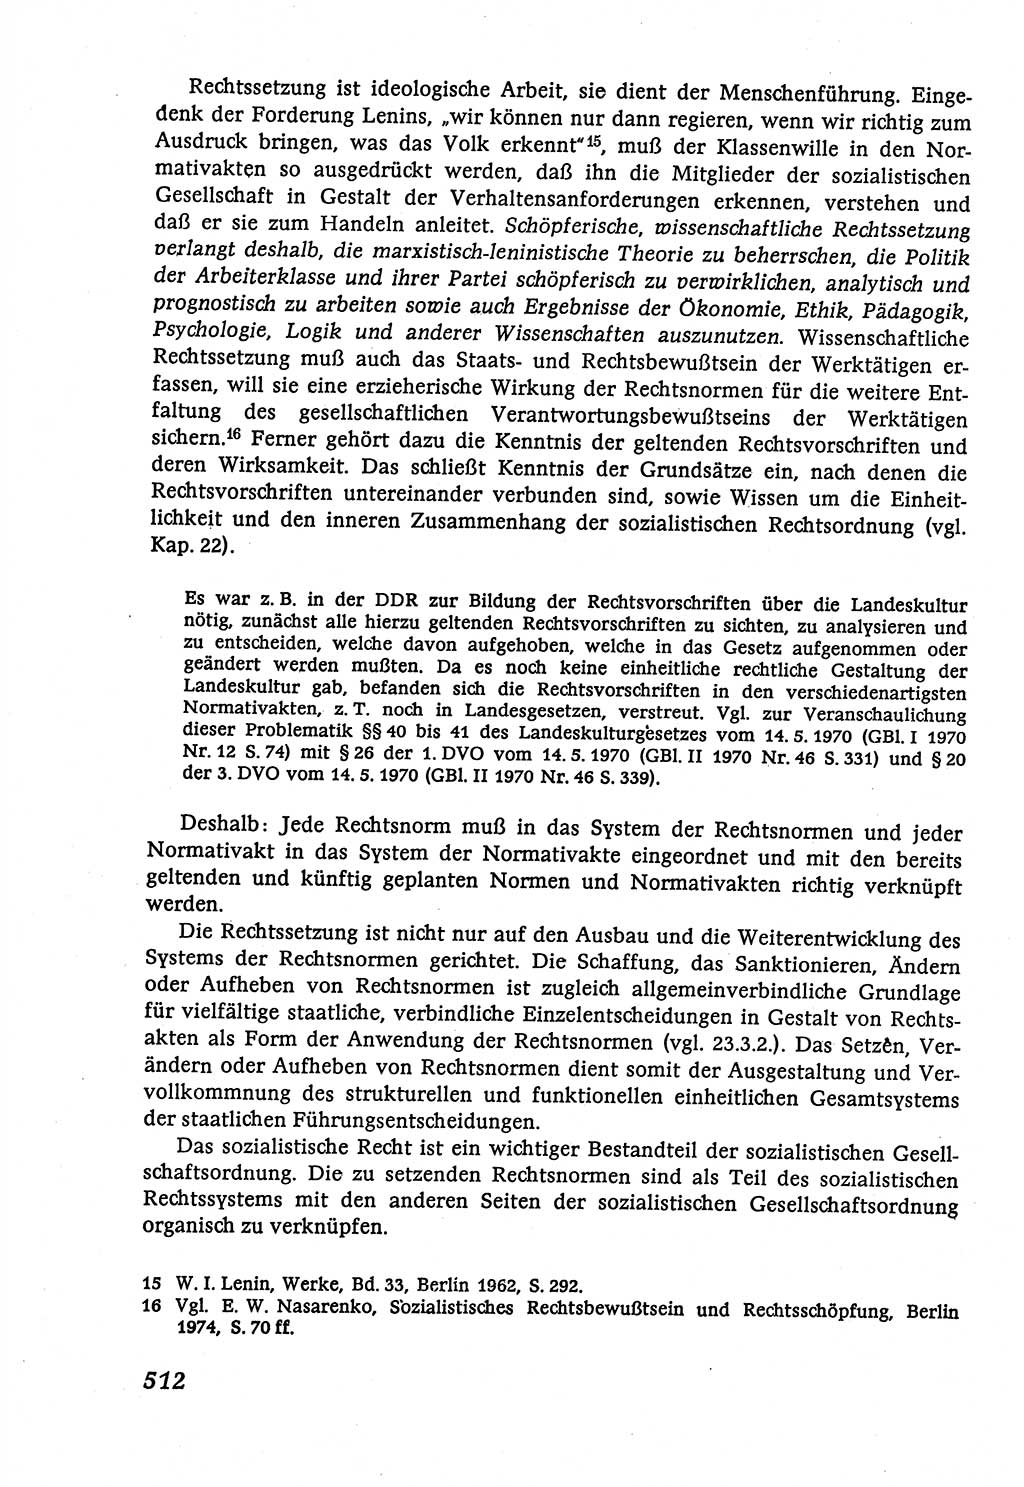 Marxistisch-leninistische (ML) Staats- und Rechtstheorie [Deutsche Demokratische Republik (DDR)], Lehrbuch 1980, Seite 512 (ML St.-R.-Th. DDR Lb. 1980, S. 512)